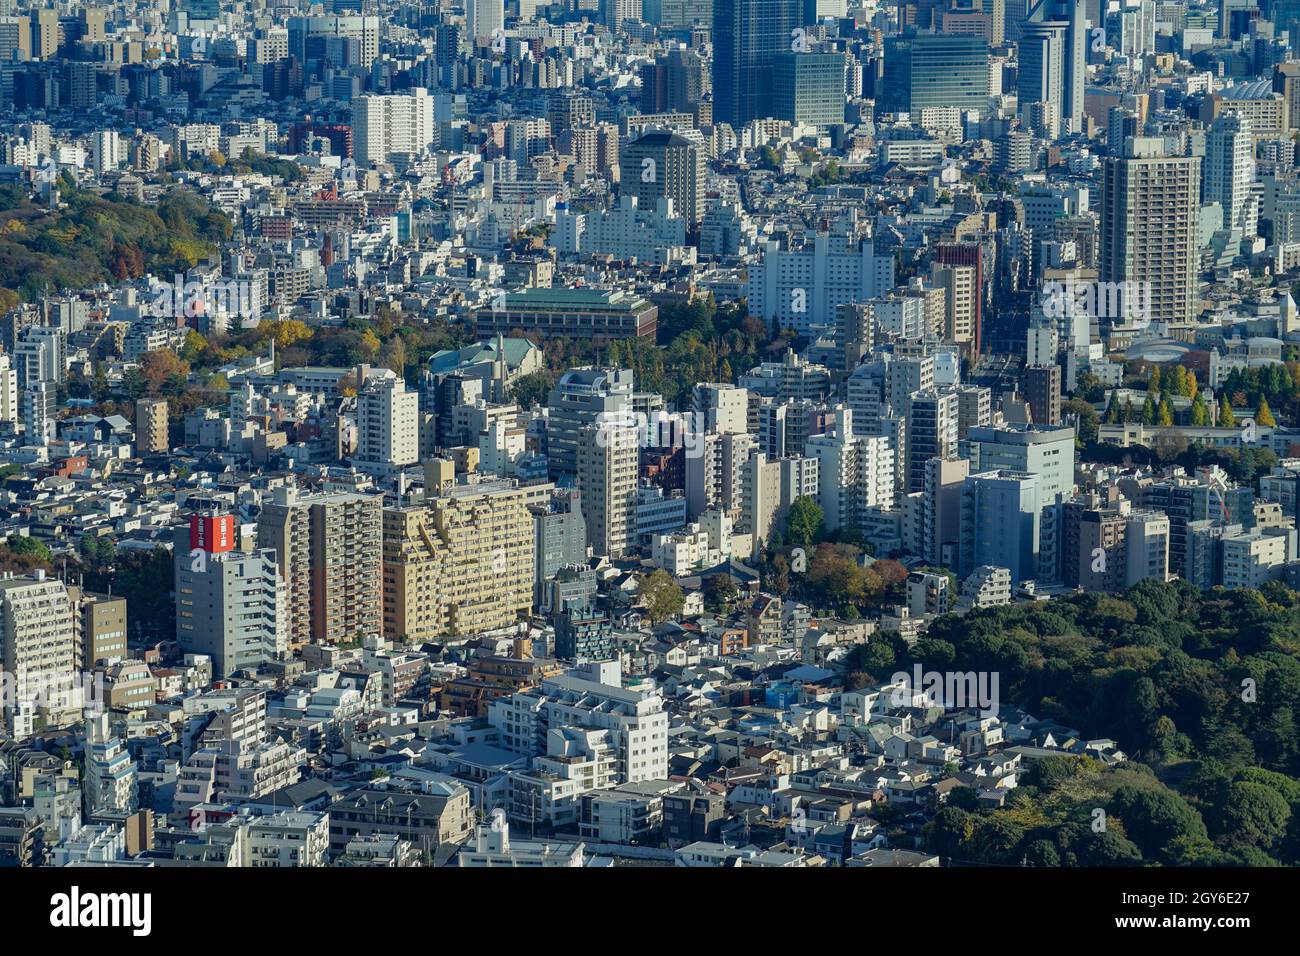 Skyline di Tokyo visto dall'osservatorio Sunshine del 60. Luogo di ripresa: Area metropolitana di Tokyo Foto Stock